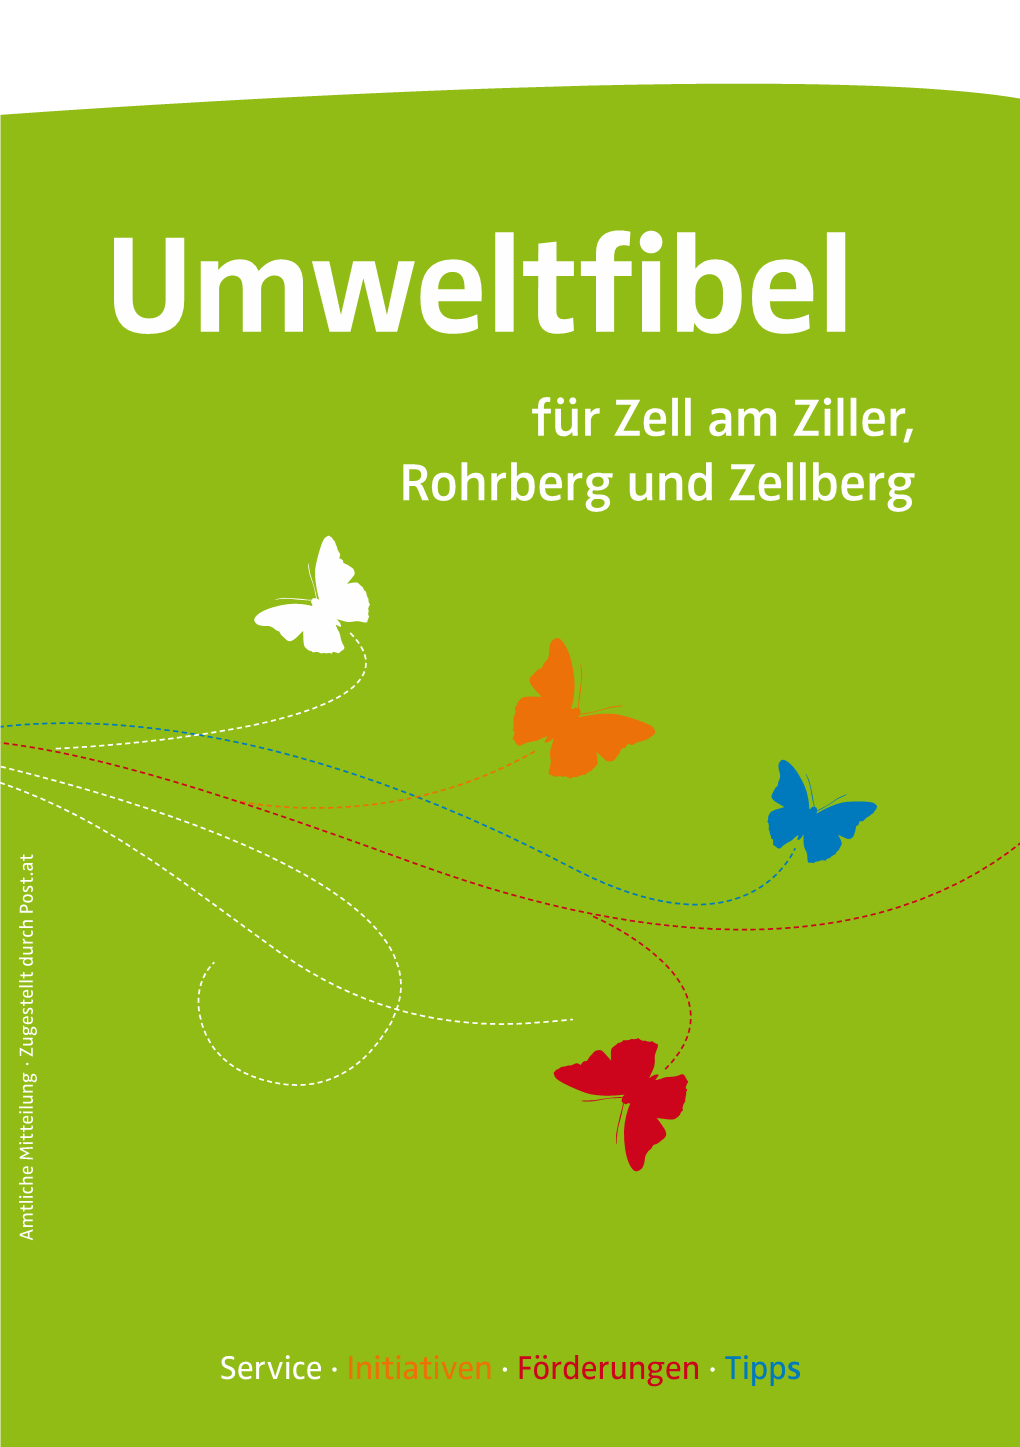 Umweltfibel Für Zell Am Ziller, Rohrberg Und Zellberg Amtliche Mitteilung · Zugestellt Durch Post.At